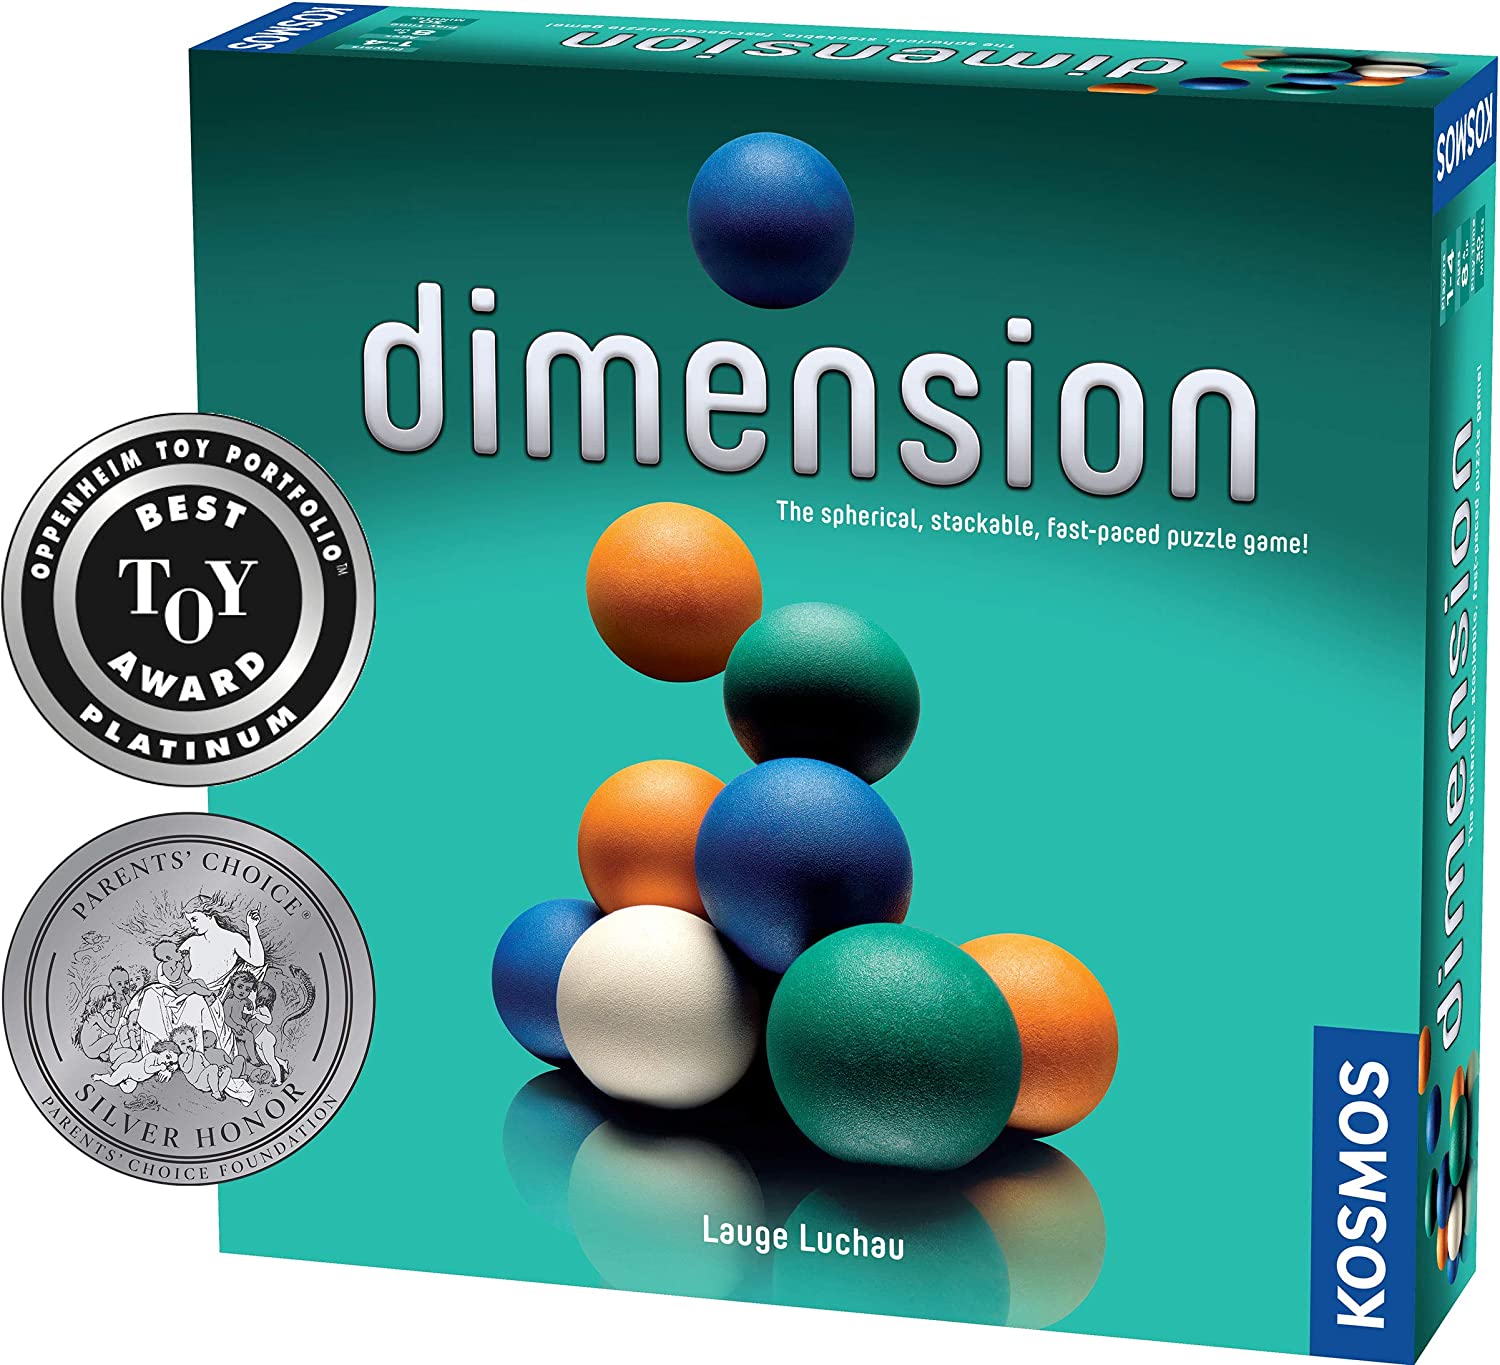 楽天日本小売業販売Dimension A 3D Kosmos テンポの良いパズルゲーム 最大4人対戦 戦略 早押し ロジックファン向け 3Dパズル ブレインティーザーパズル ゲーム ボードゲーム